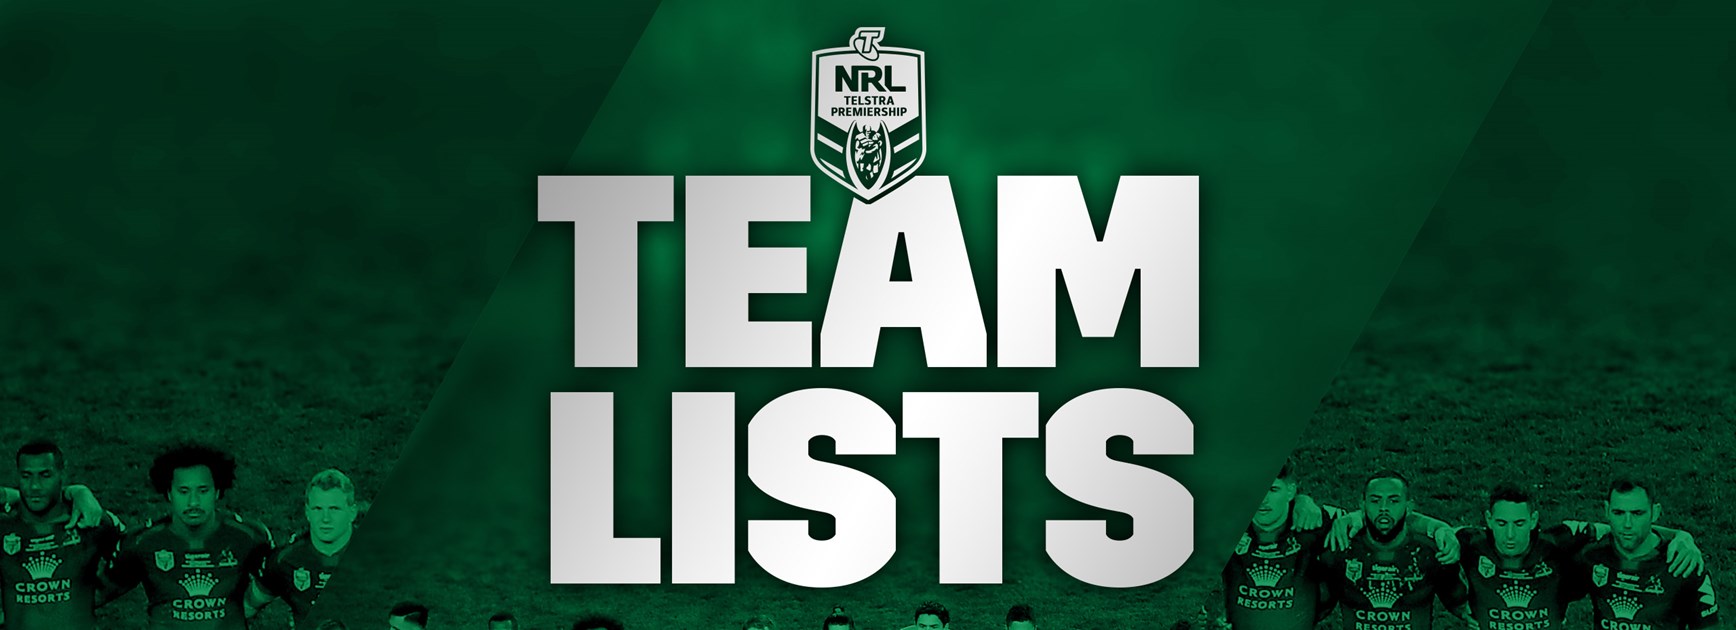 Updated round 6 team lists